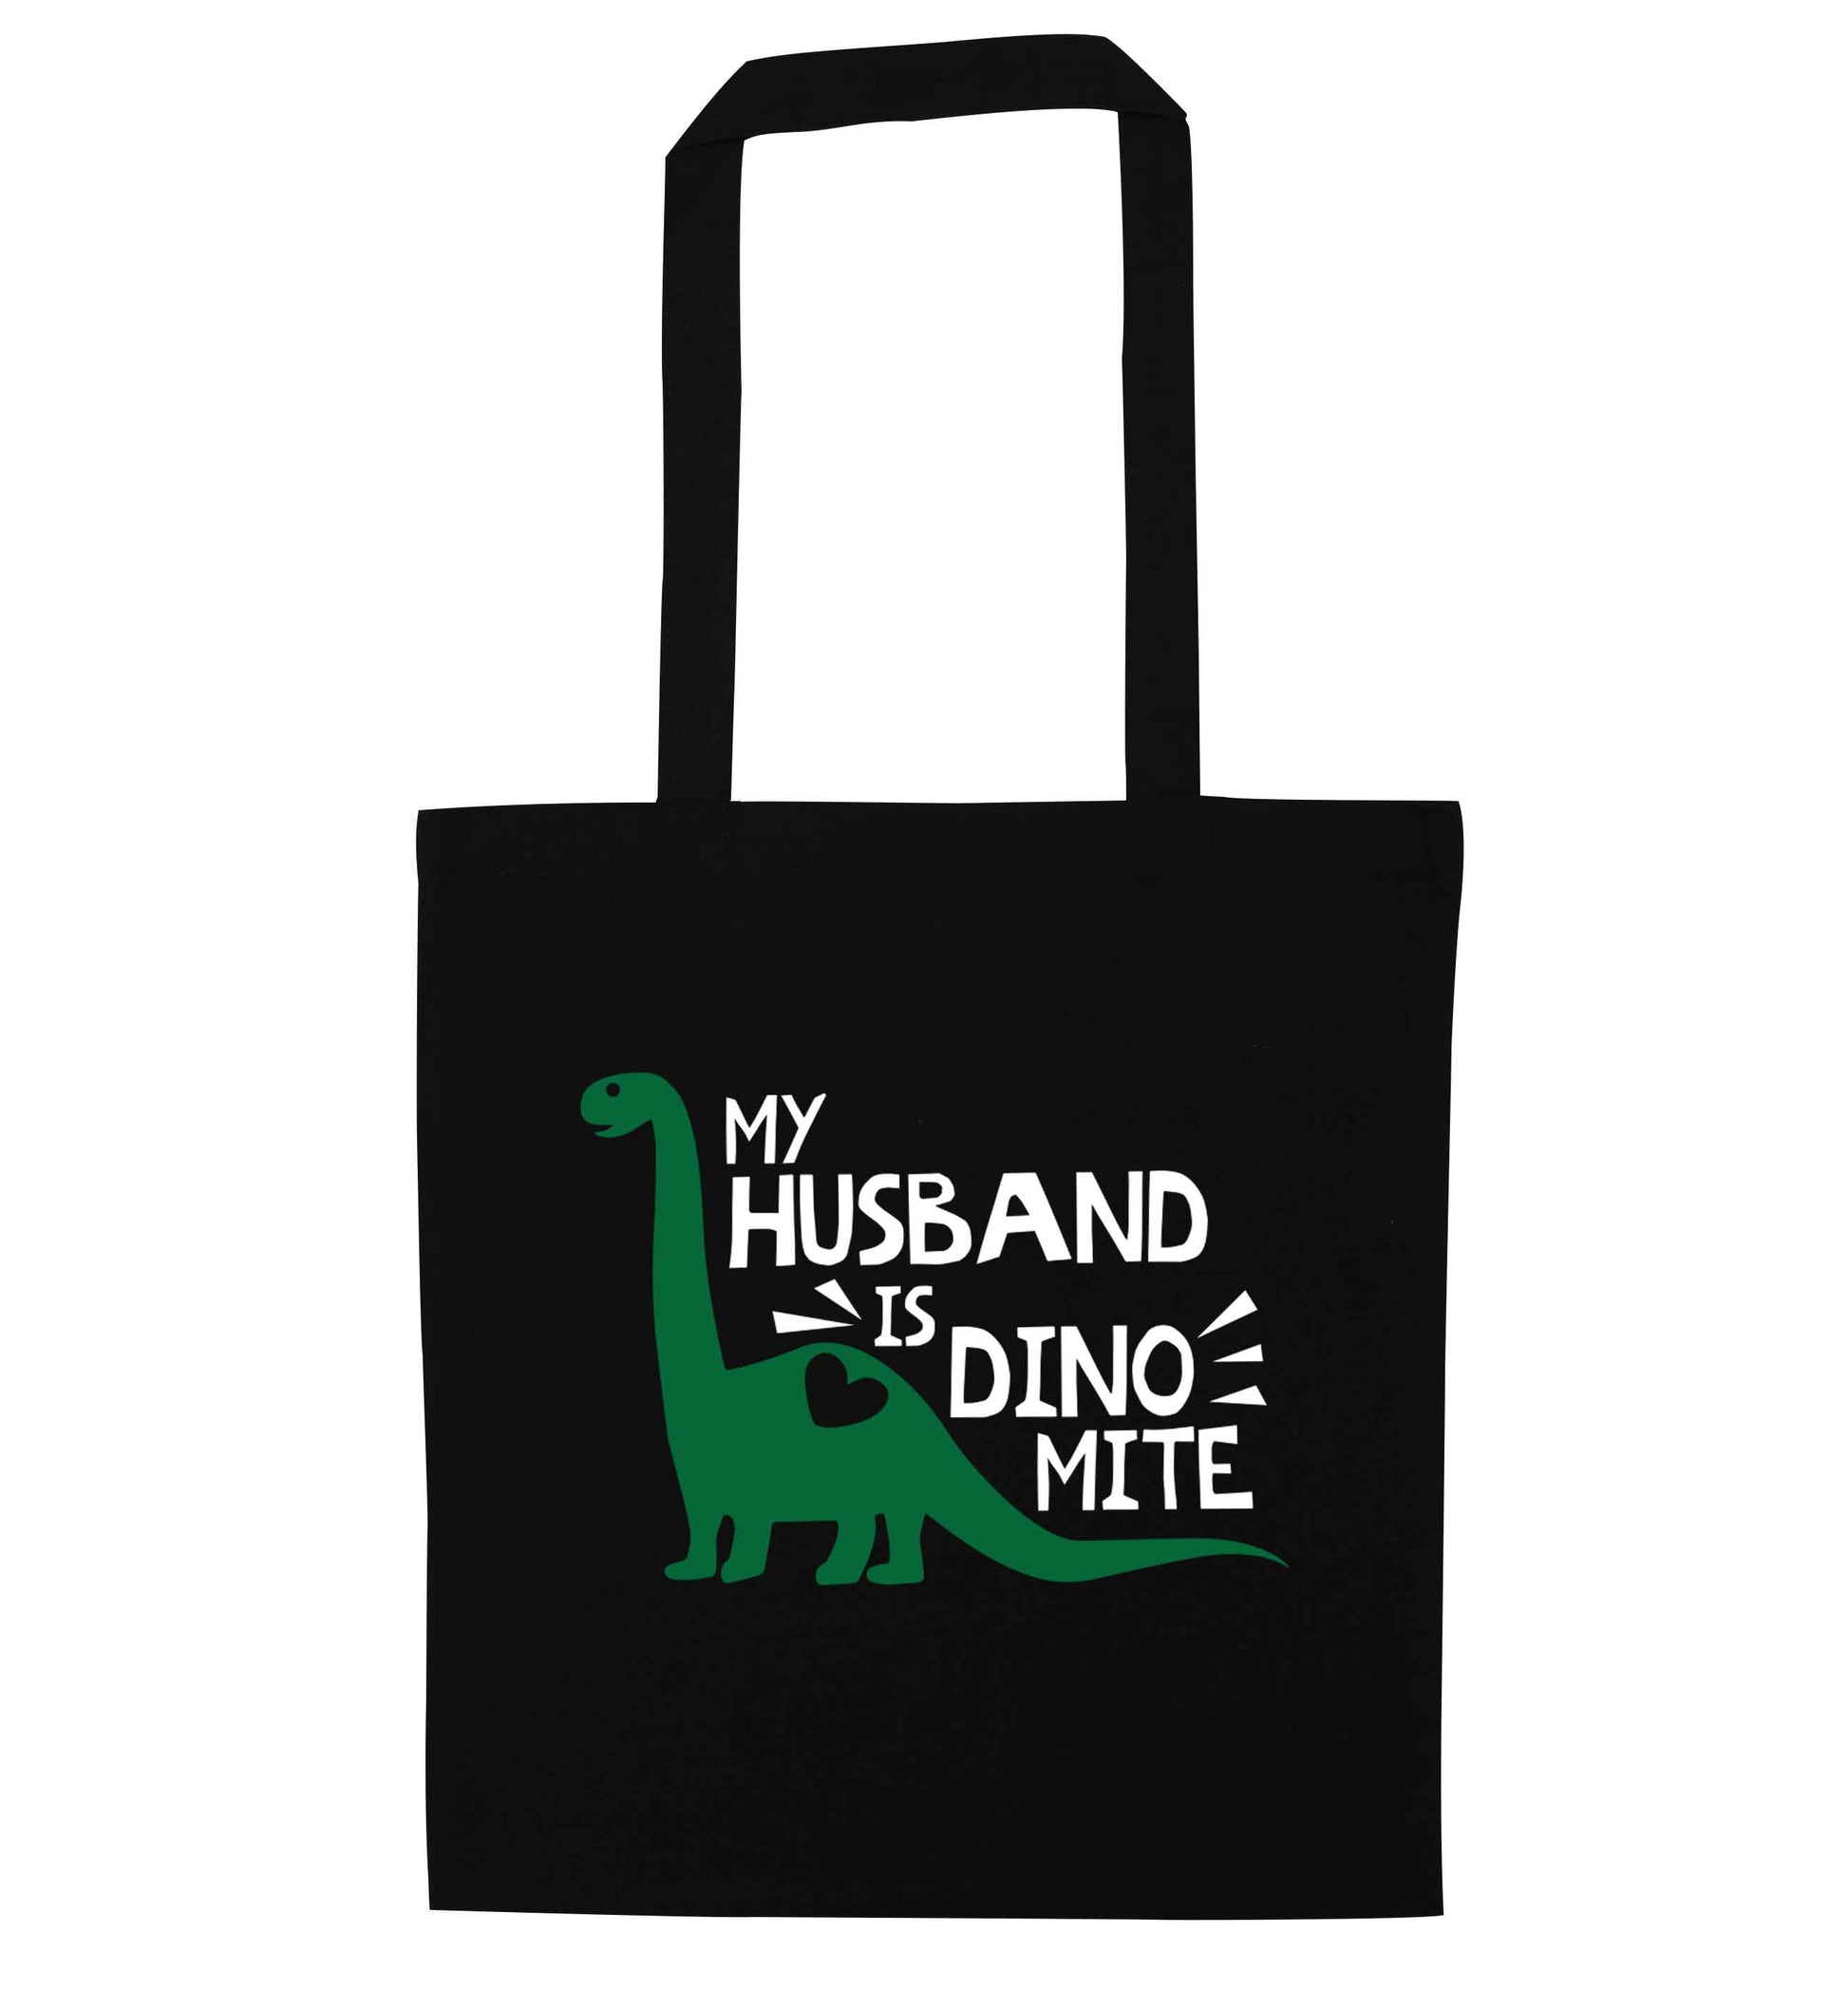 My husband is dinomite! black tote bag